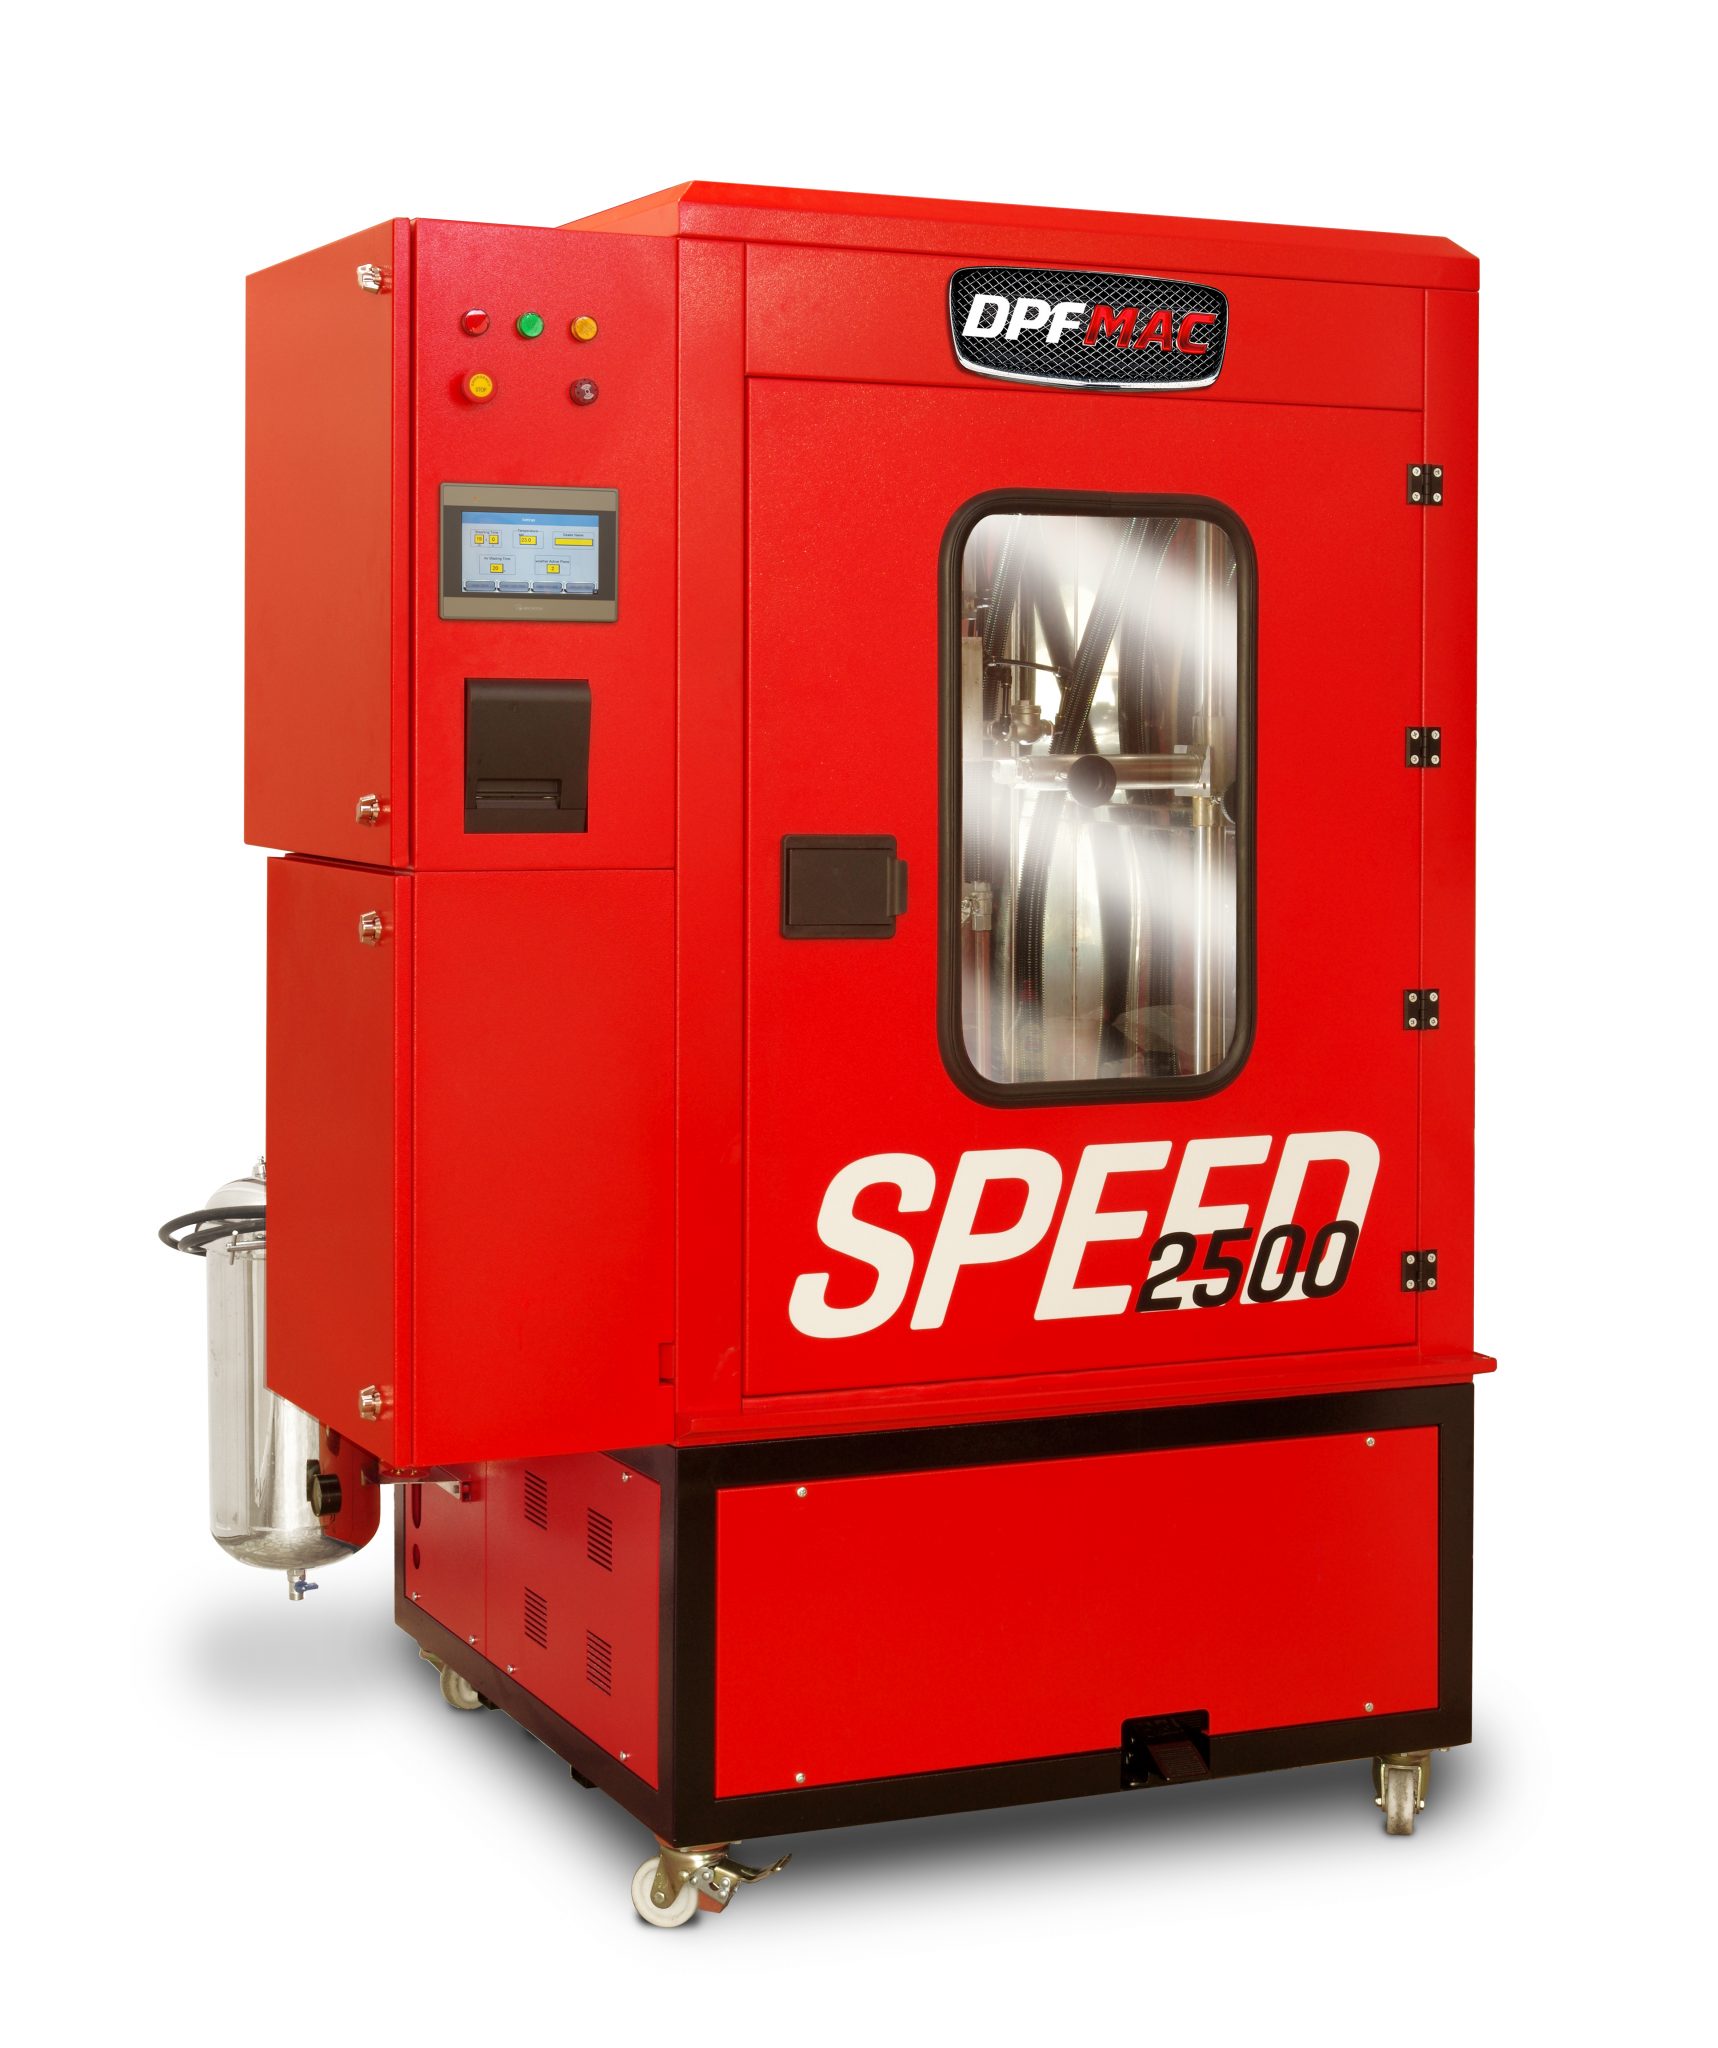 DPF Cleaning Machine Speed 2500